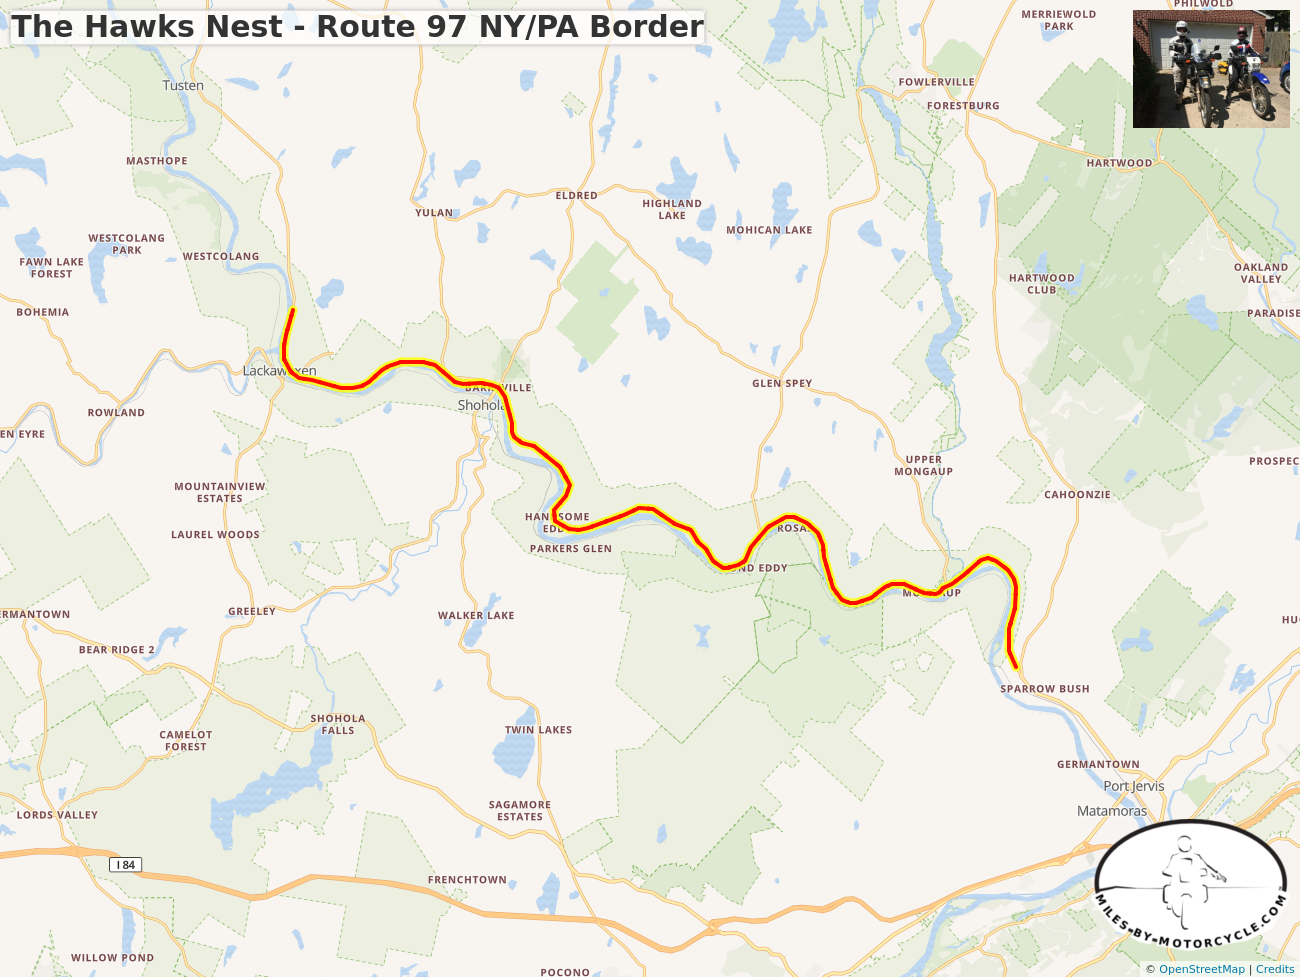 The Hawks Nest - Route 97 NY/PA Border